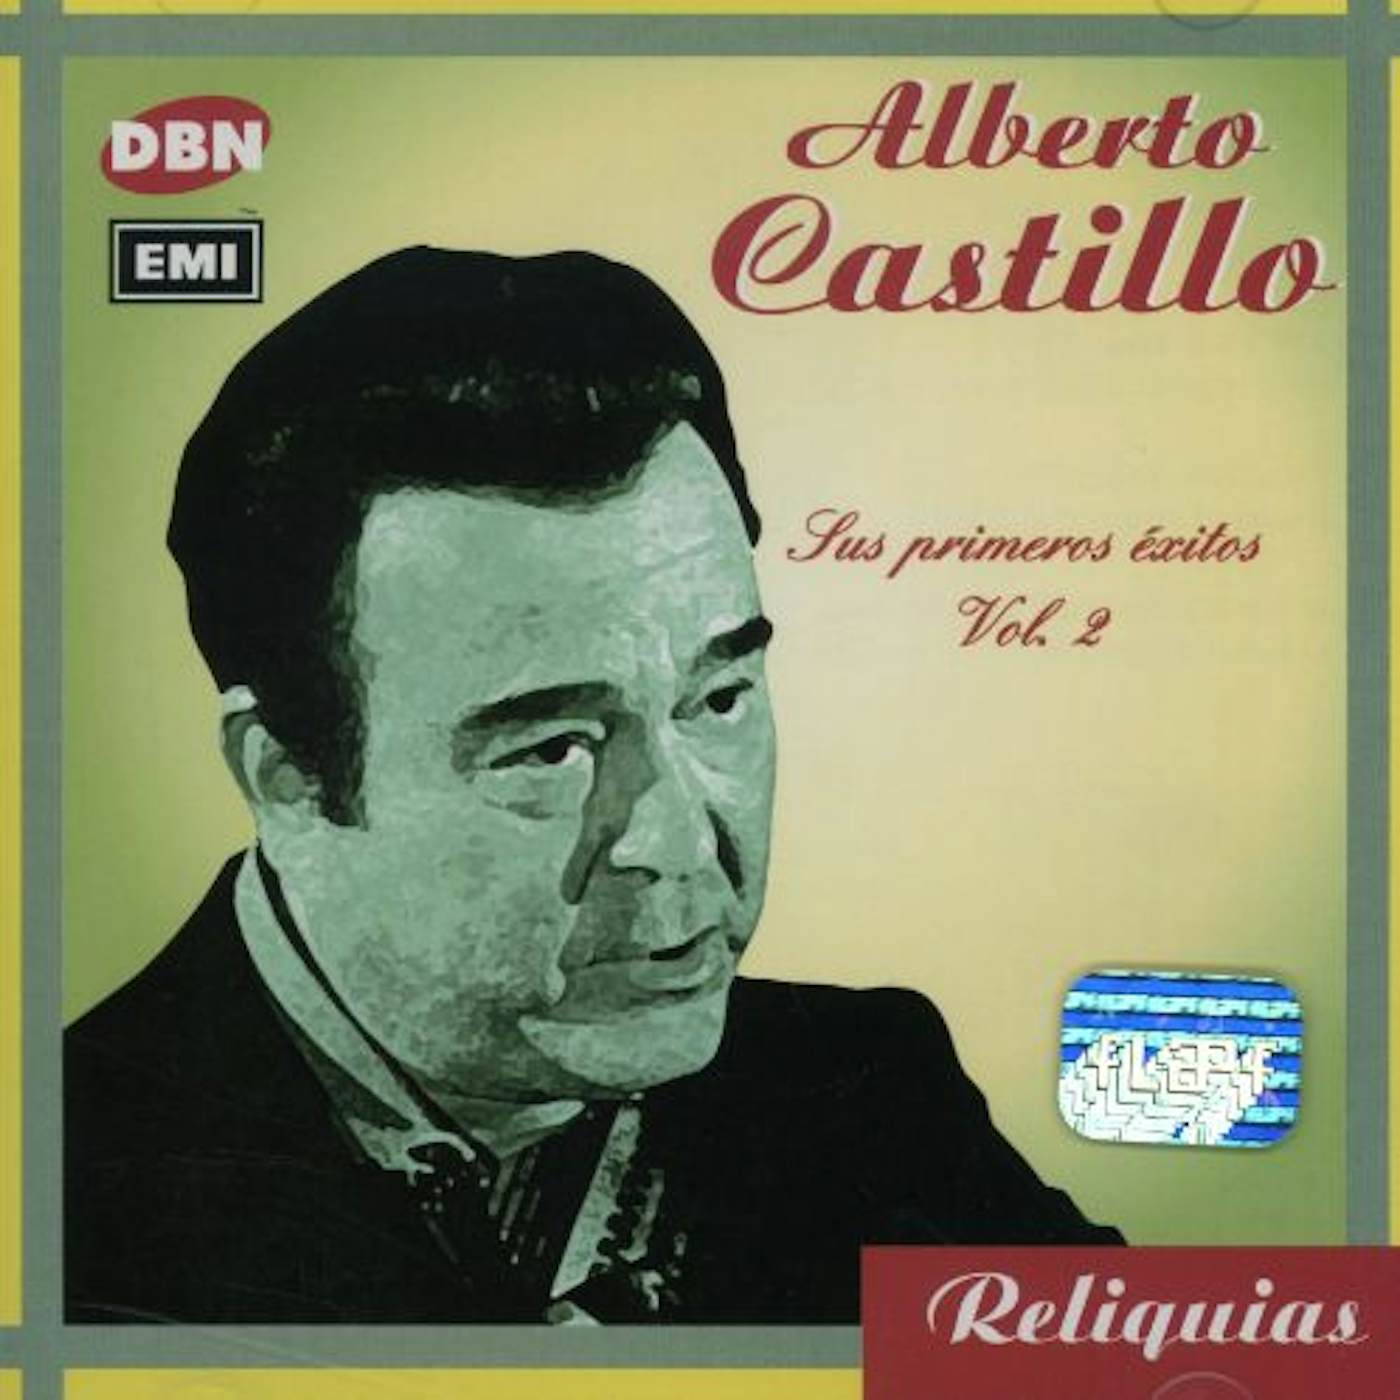 Alberto Castillo SUS PRIMEROS EXITOS 2 CD